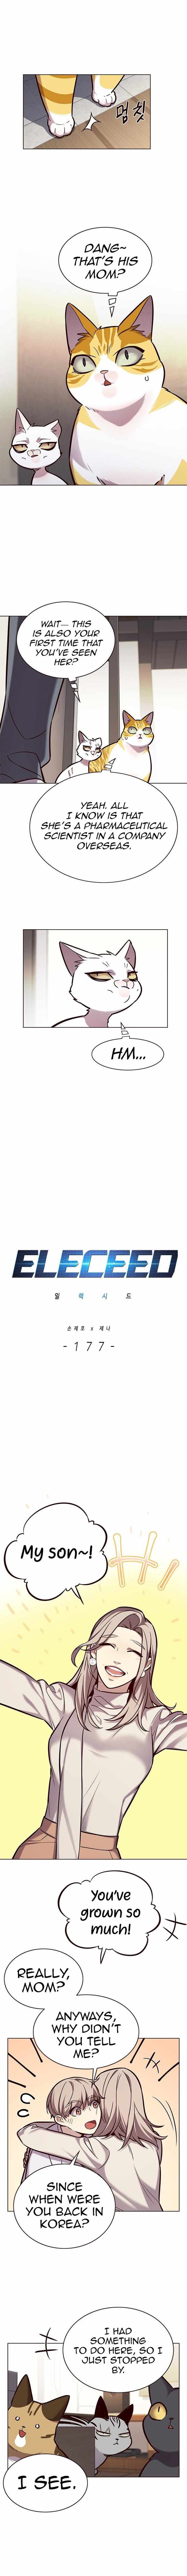 Eleceed 177 1